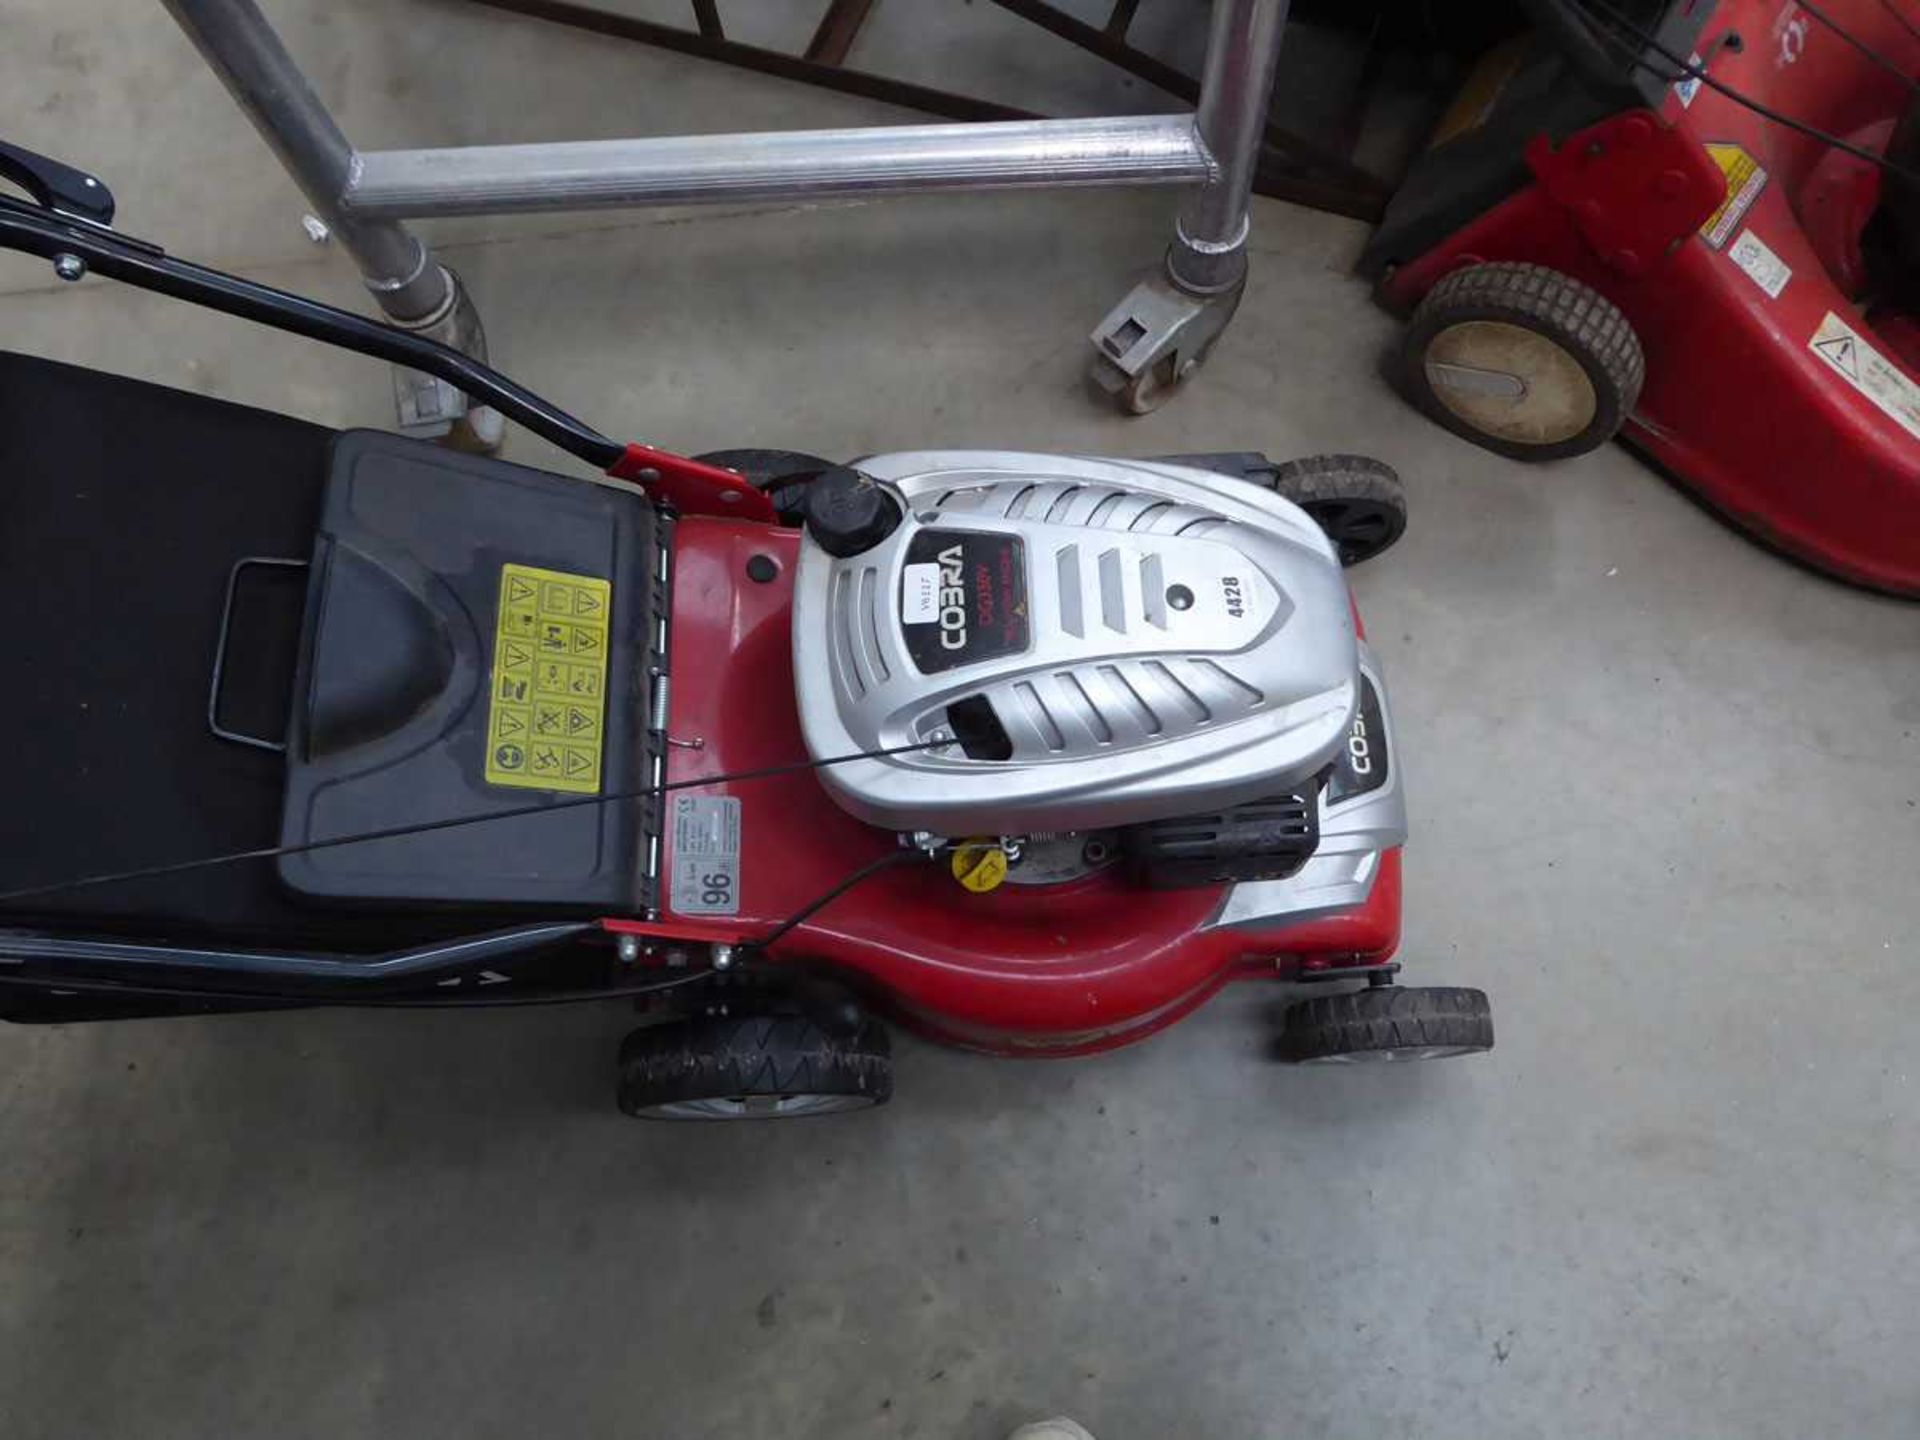 Cobra petrol powered rotary mower with grass box - Bild 2 aus 2